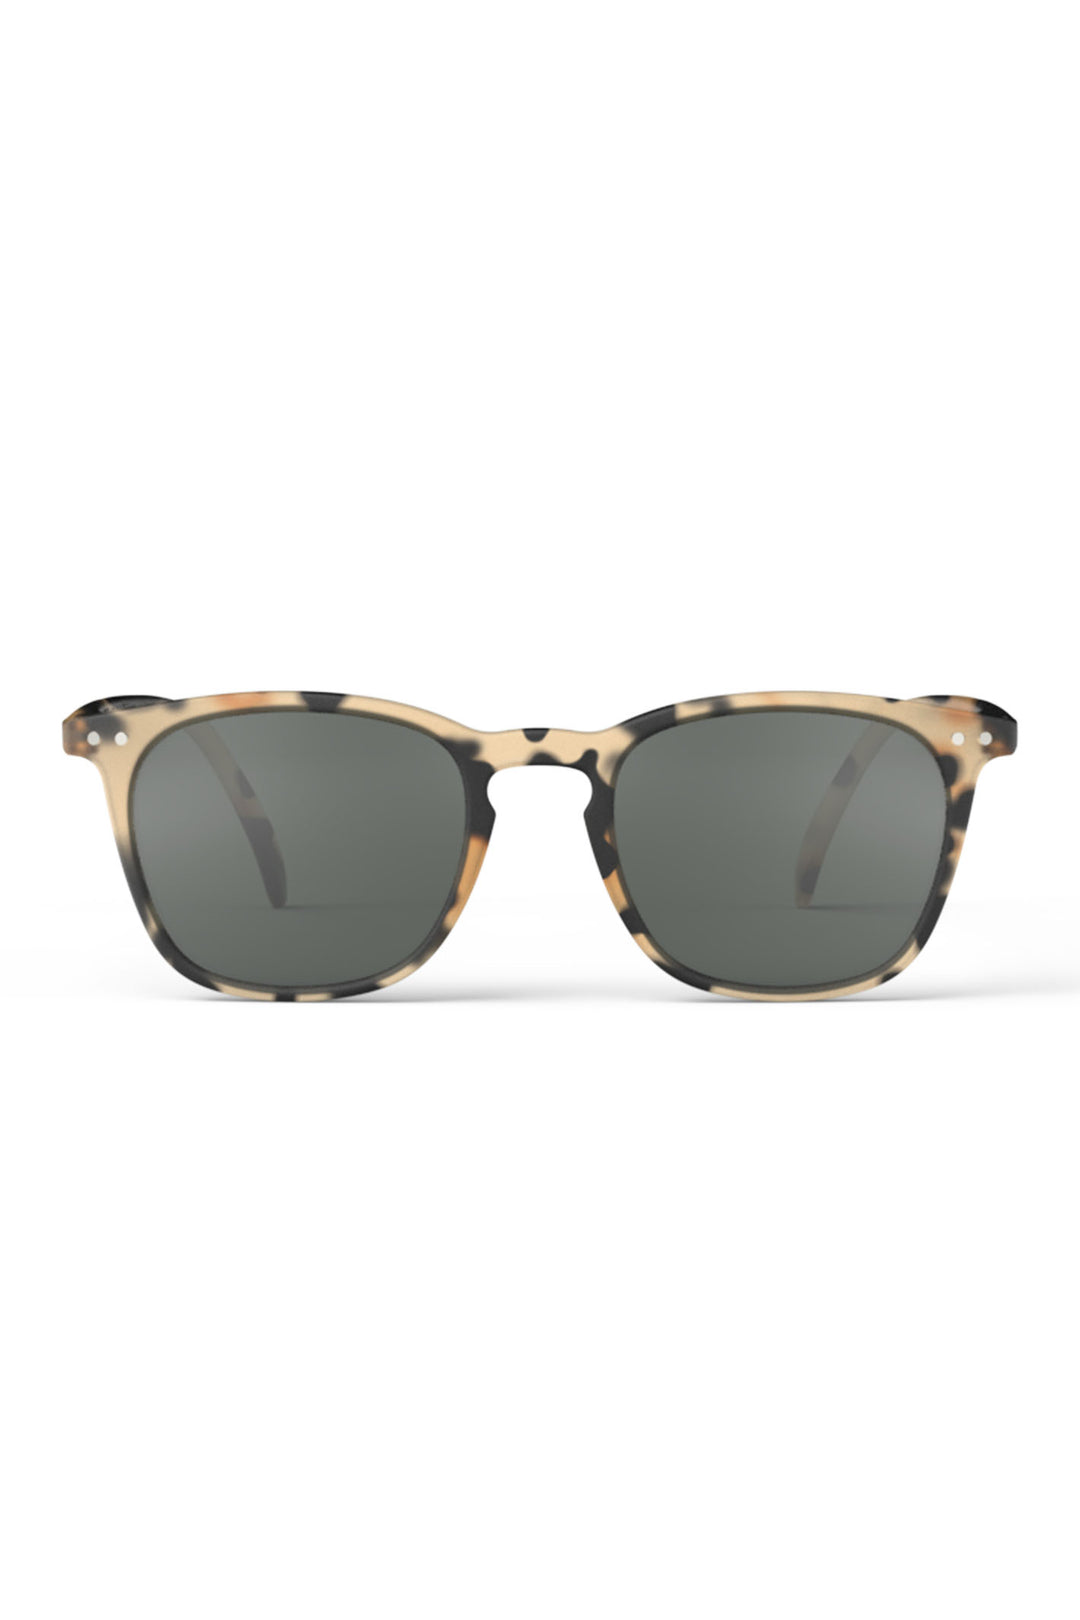 Izipizi Paris SLMSEC69 Light Brown Tortoise Pattern Sunglasses - Olivia Grace Fashion